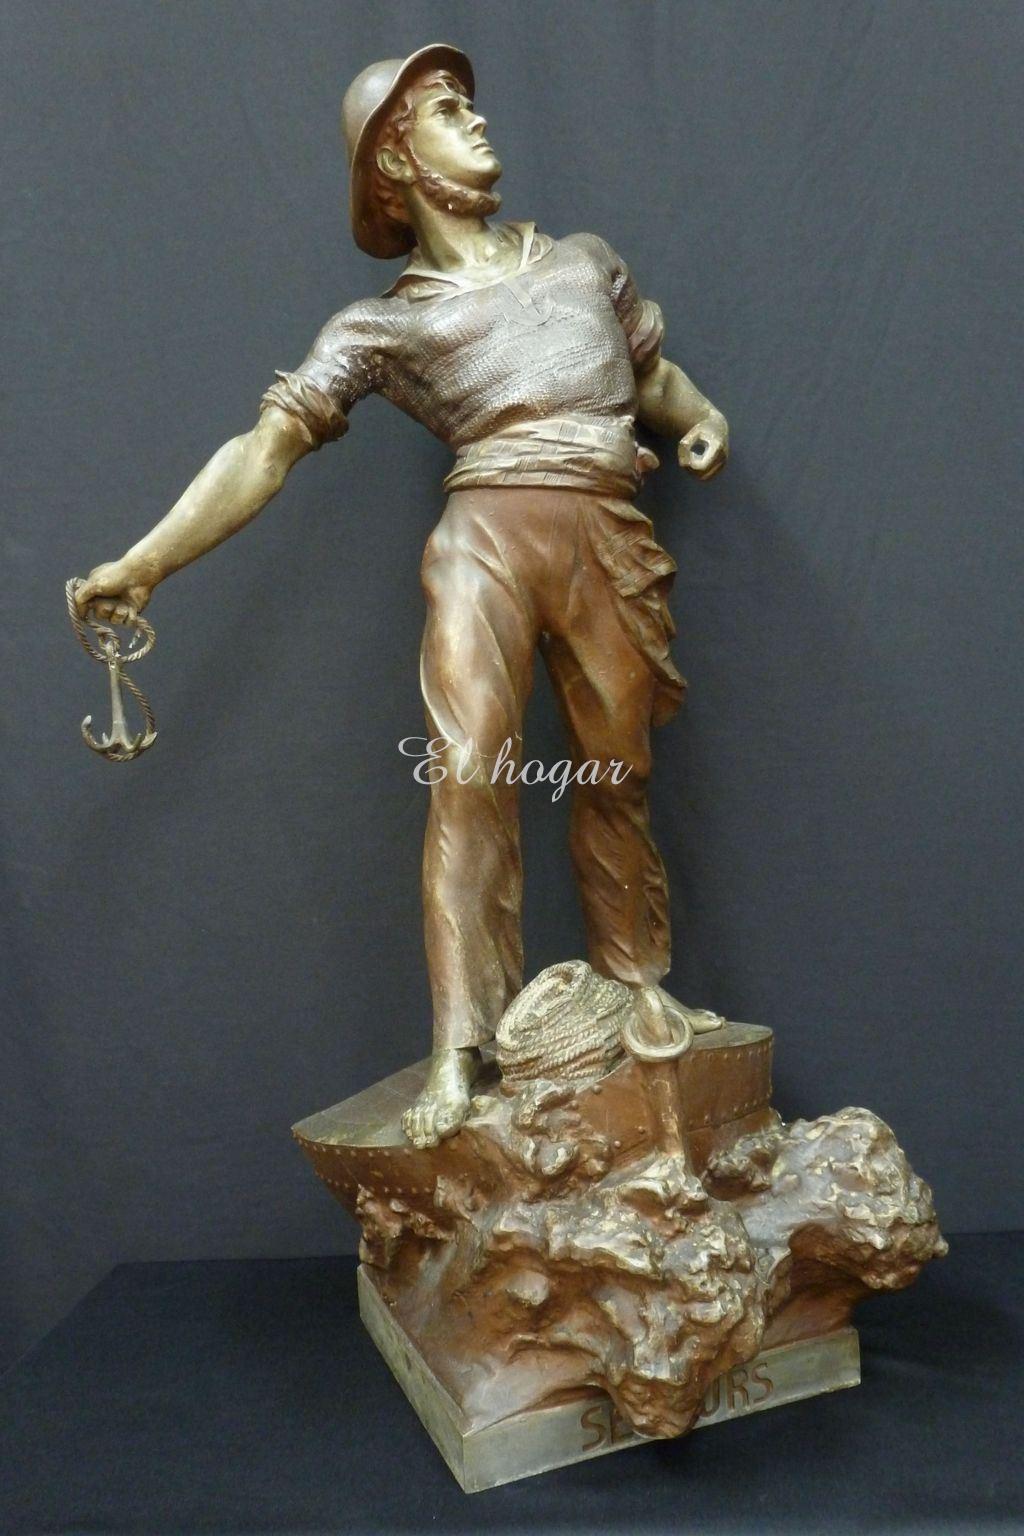 Escultura de calamina titulada " SECOURS " del escultor alemán ARTHUR WAAGEN ( 1833-1898) - Imagen 5